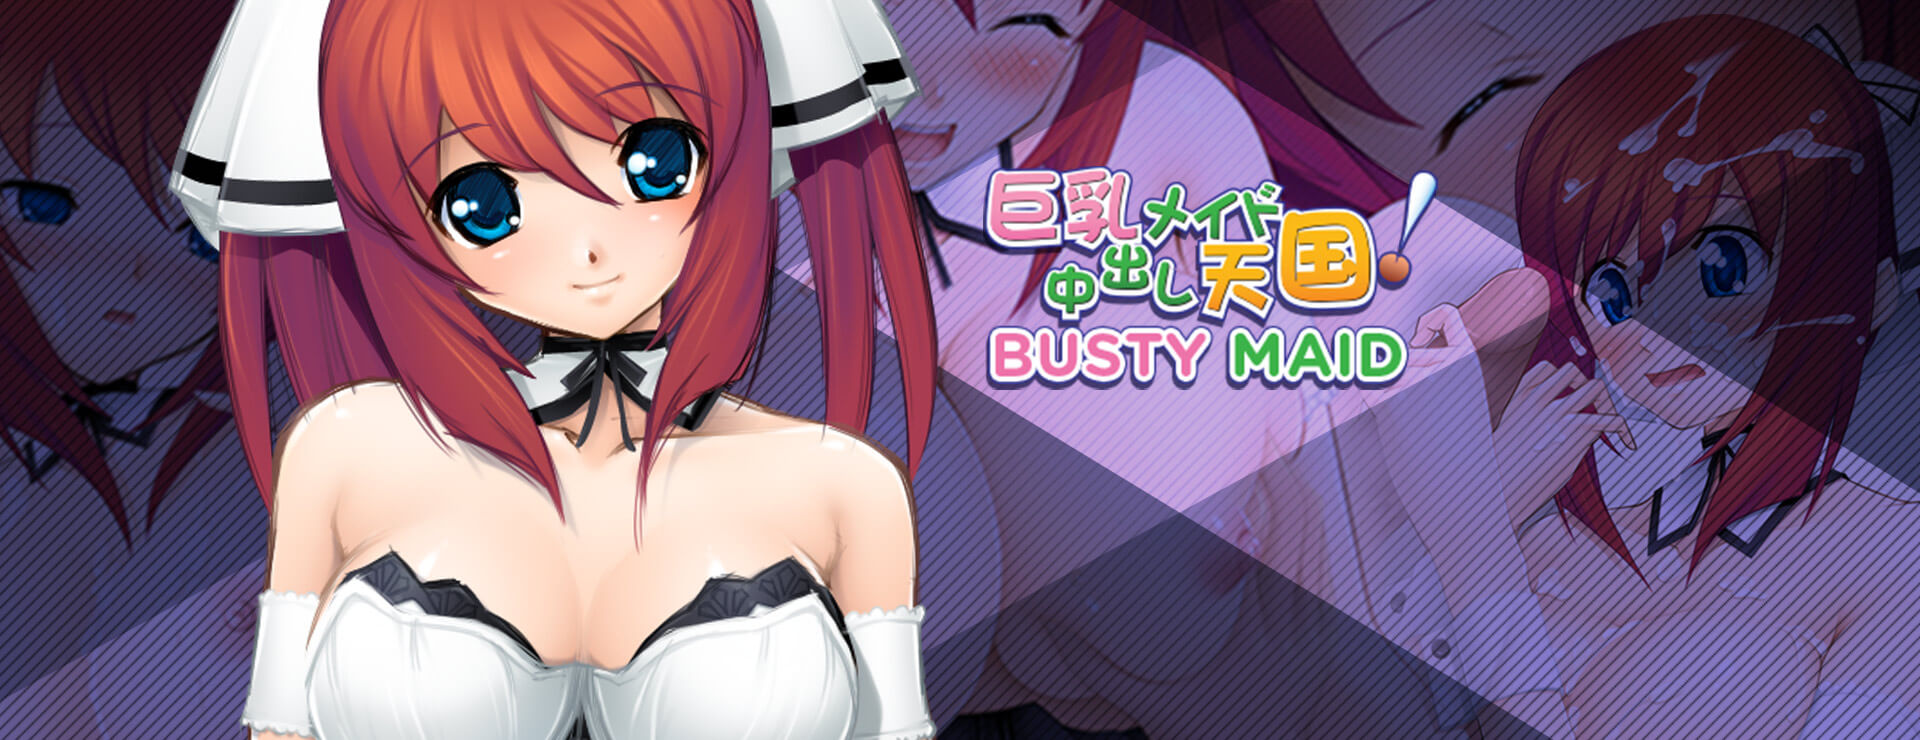 Busty Maid - Powieść wizualna Gra